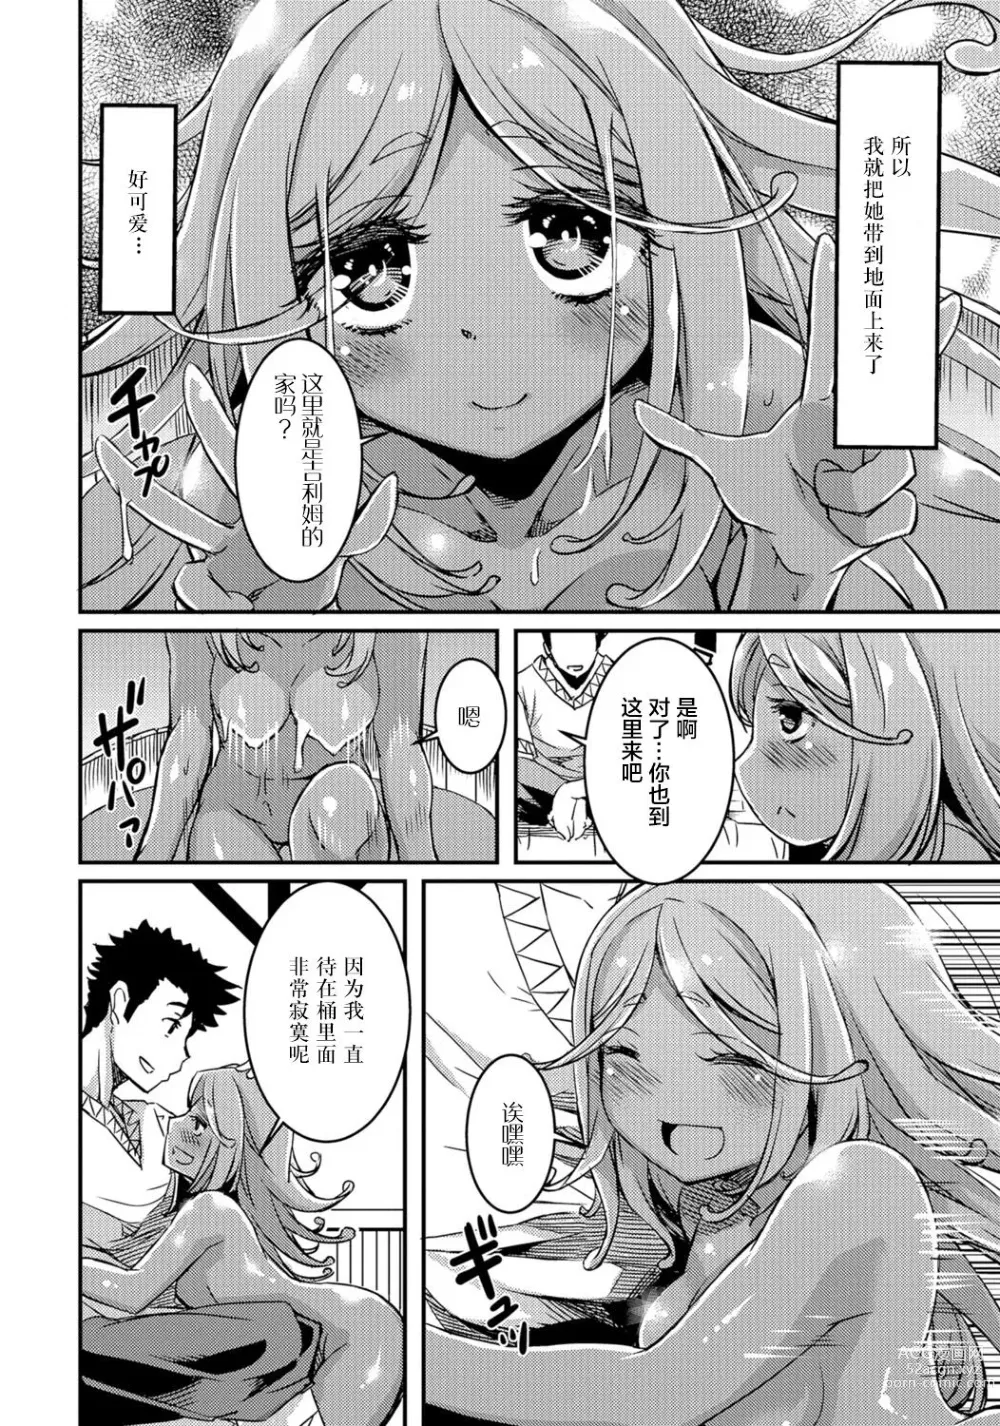 Page 4 of manga Slime na Kanojo (decensored)